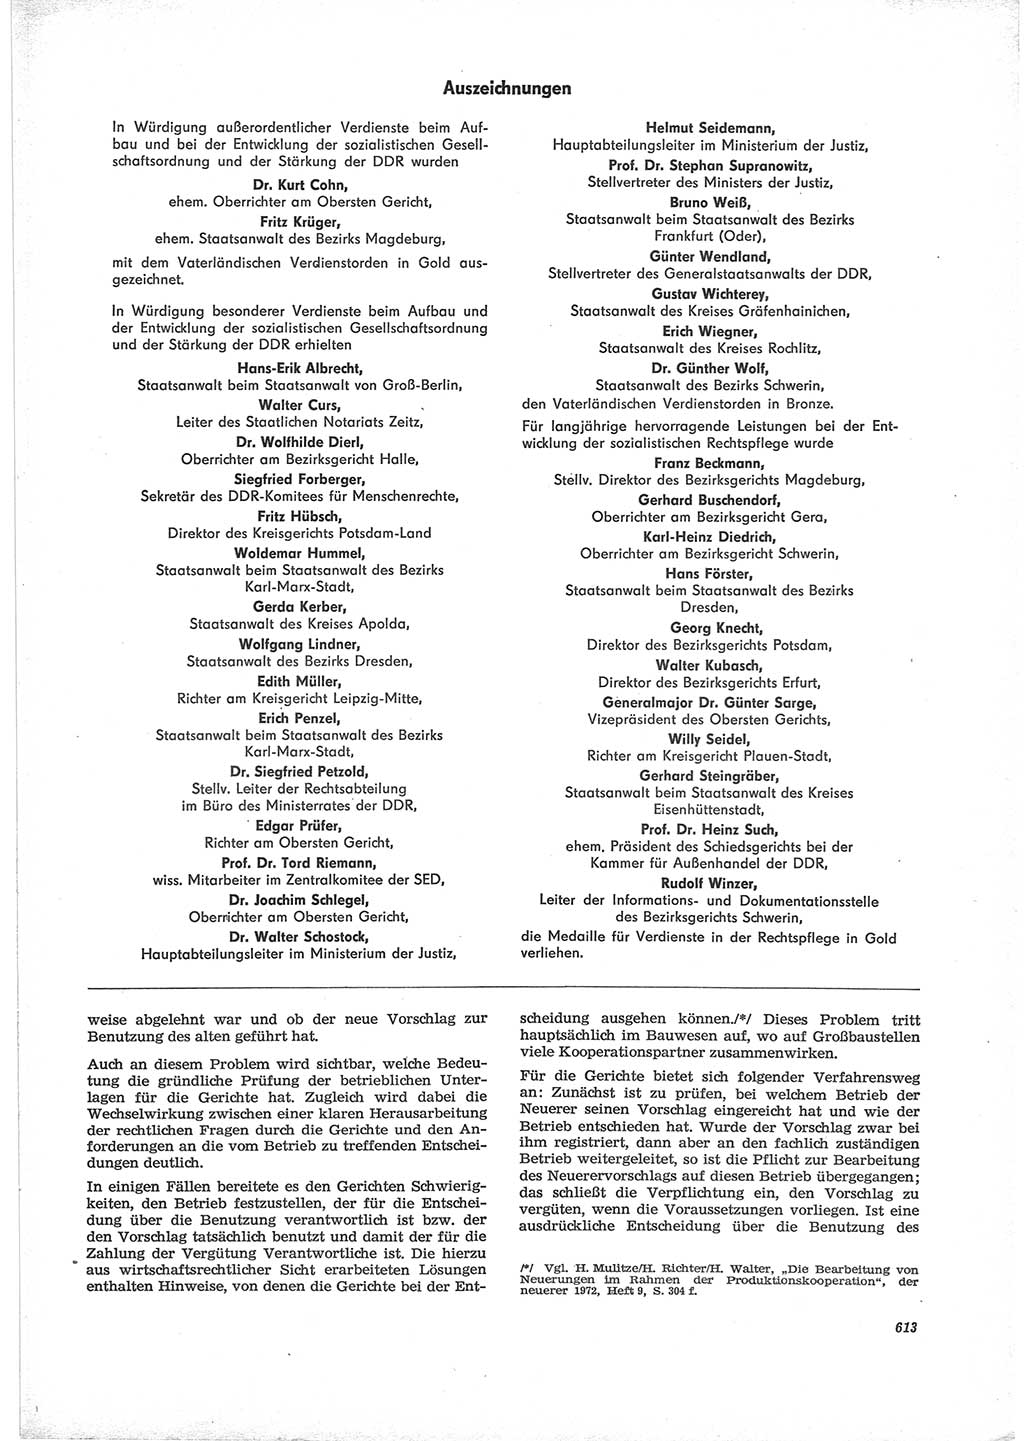 Neue Justiz (NJ), Zeitschrift für Recht und Rechtswissenschaft [Deutsche Demokratische Republik (DDR)], 28. Jahrgang 1974, Seite 613 (NJ DDR 1974, S. 613)